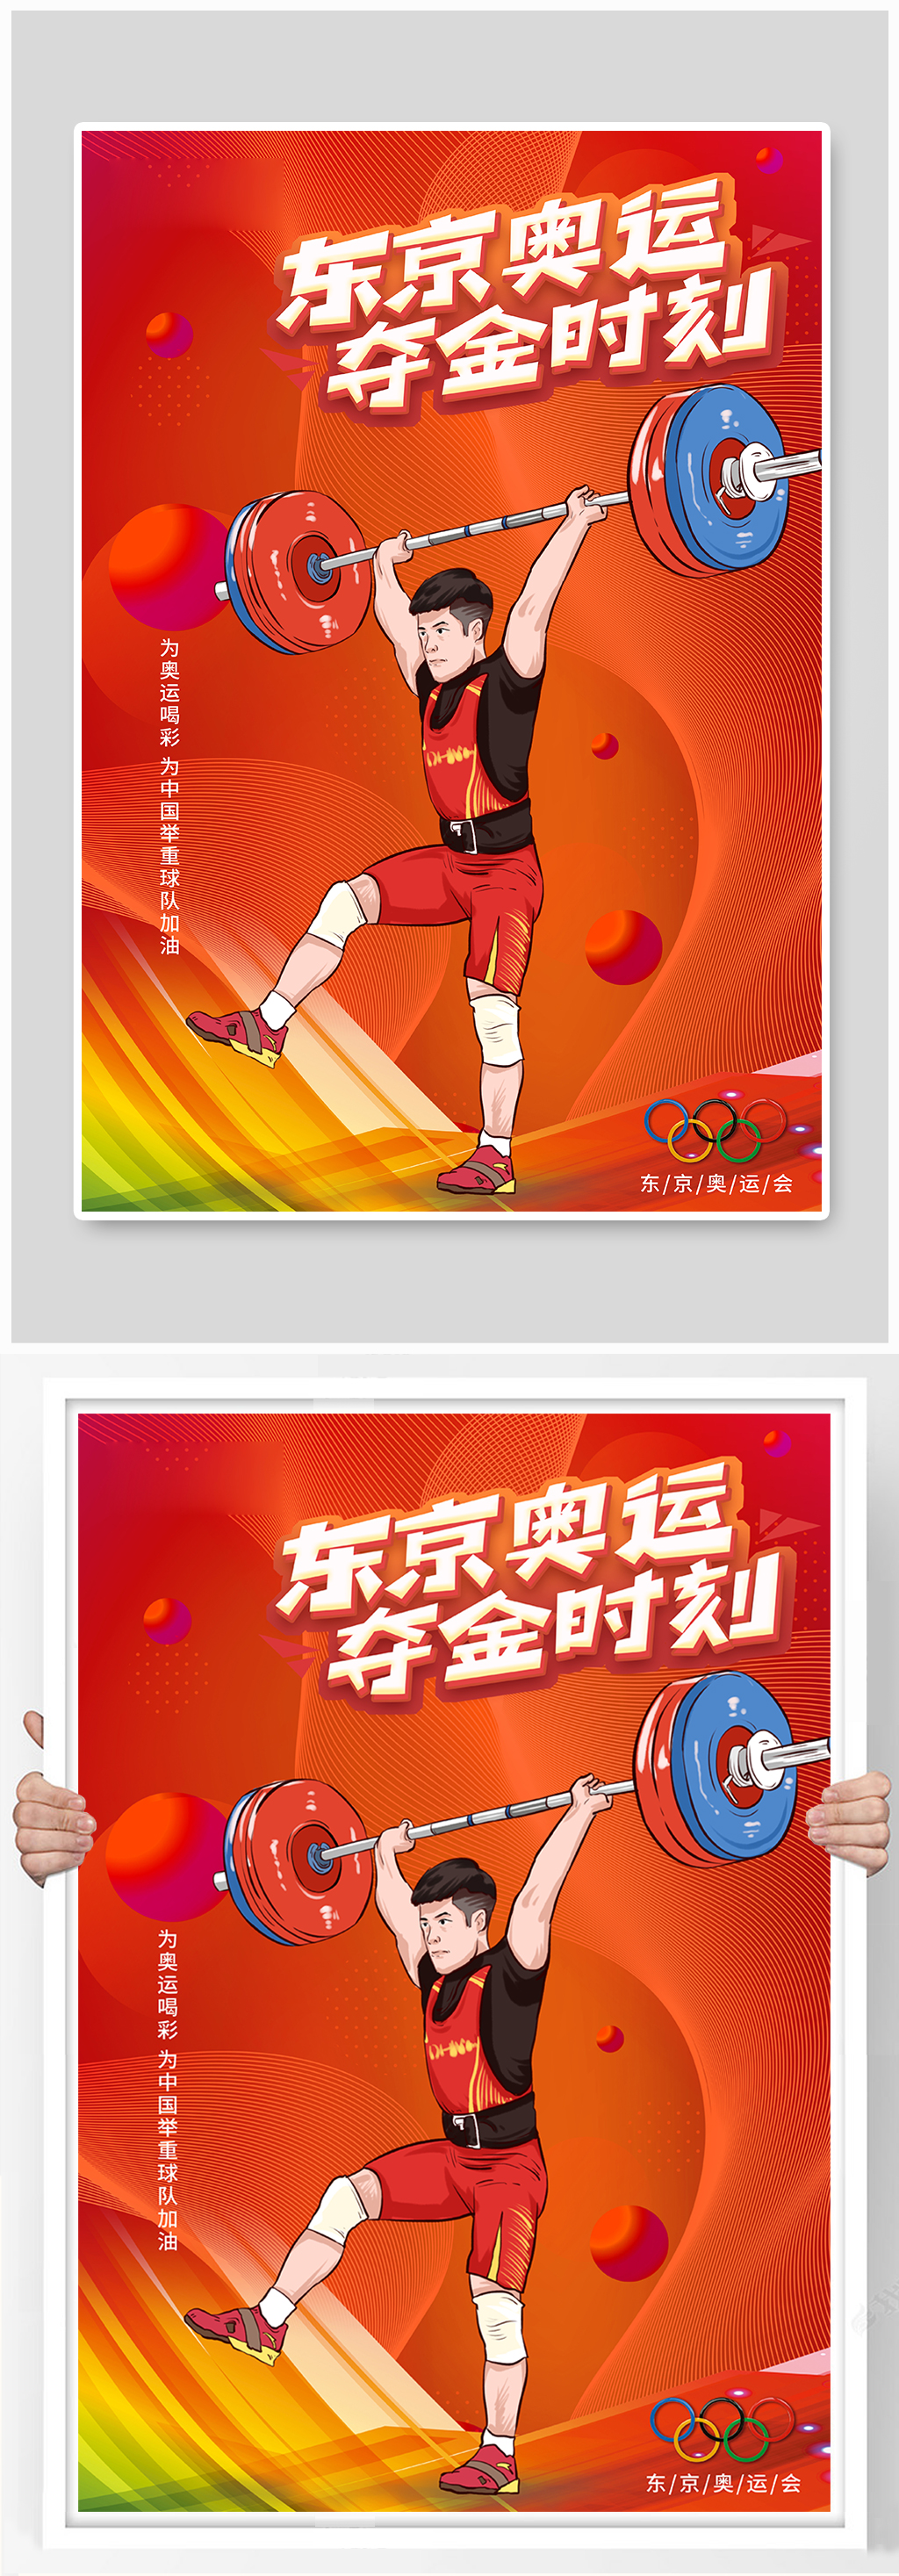 东京奥运夺金时刻举重红色中国风海报素材